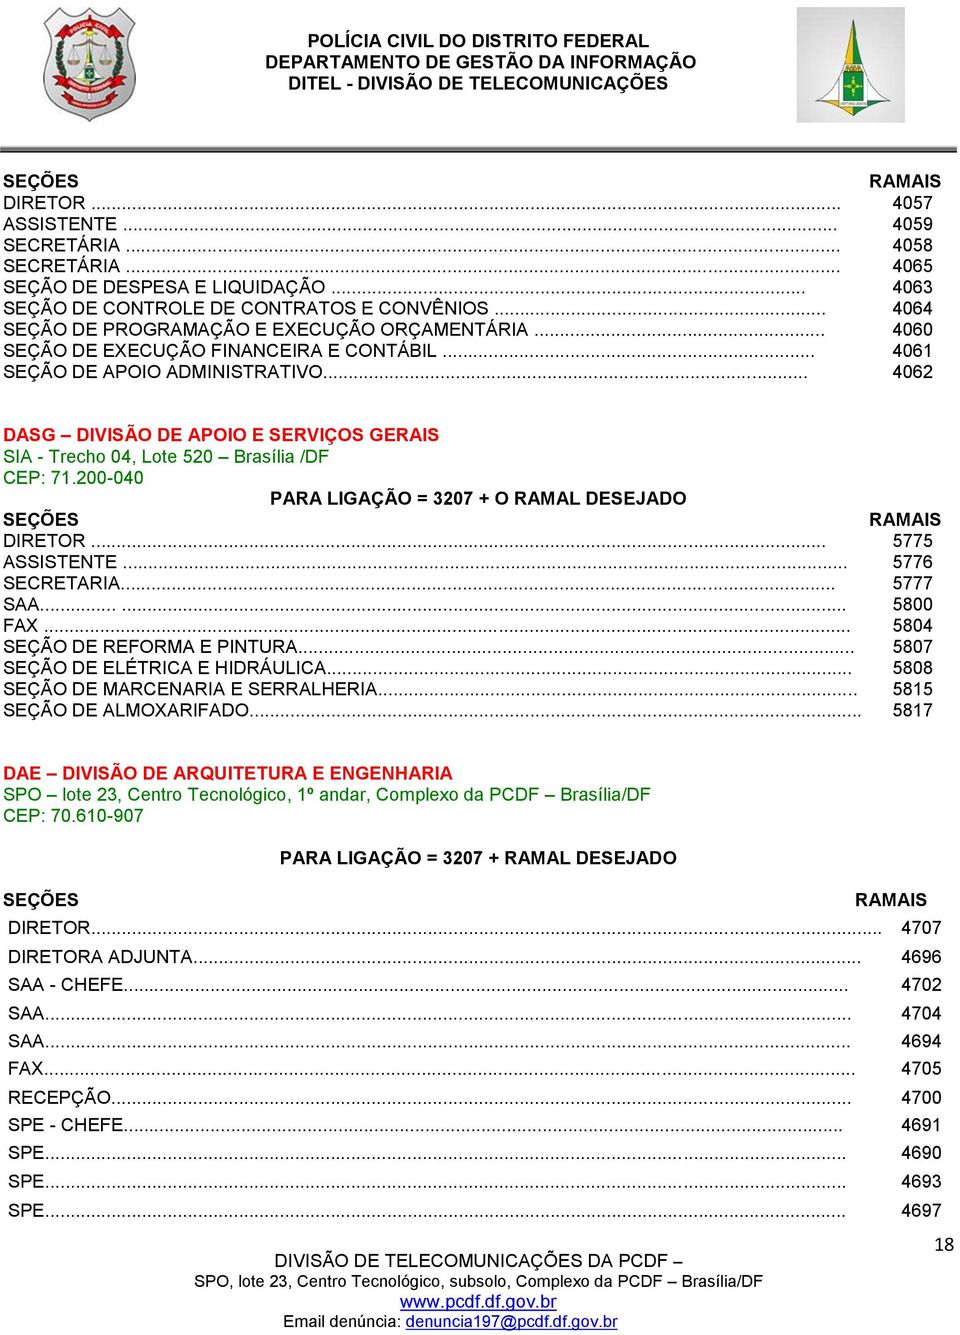 .. 4062 DASG DIVISÃO DE APOIO E SERVIÇOS GERAIS SIA - Trecho 04, Lote 520 Brasília /DF CEP: 71.200-040 PARA LIGAÇÃO = 3207 + O RAMAL DESEJADO DIRETOR... 5775 ASSISTENTE... 5776 SECRETARIA... 5777 SAA.